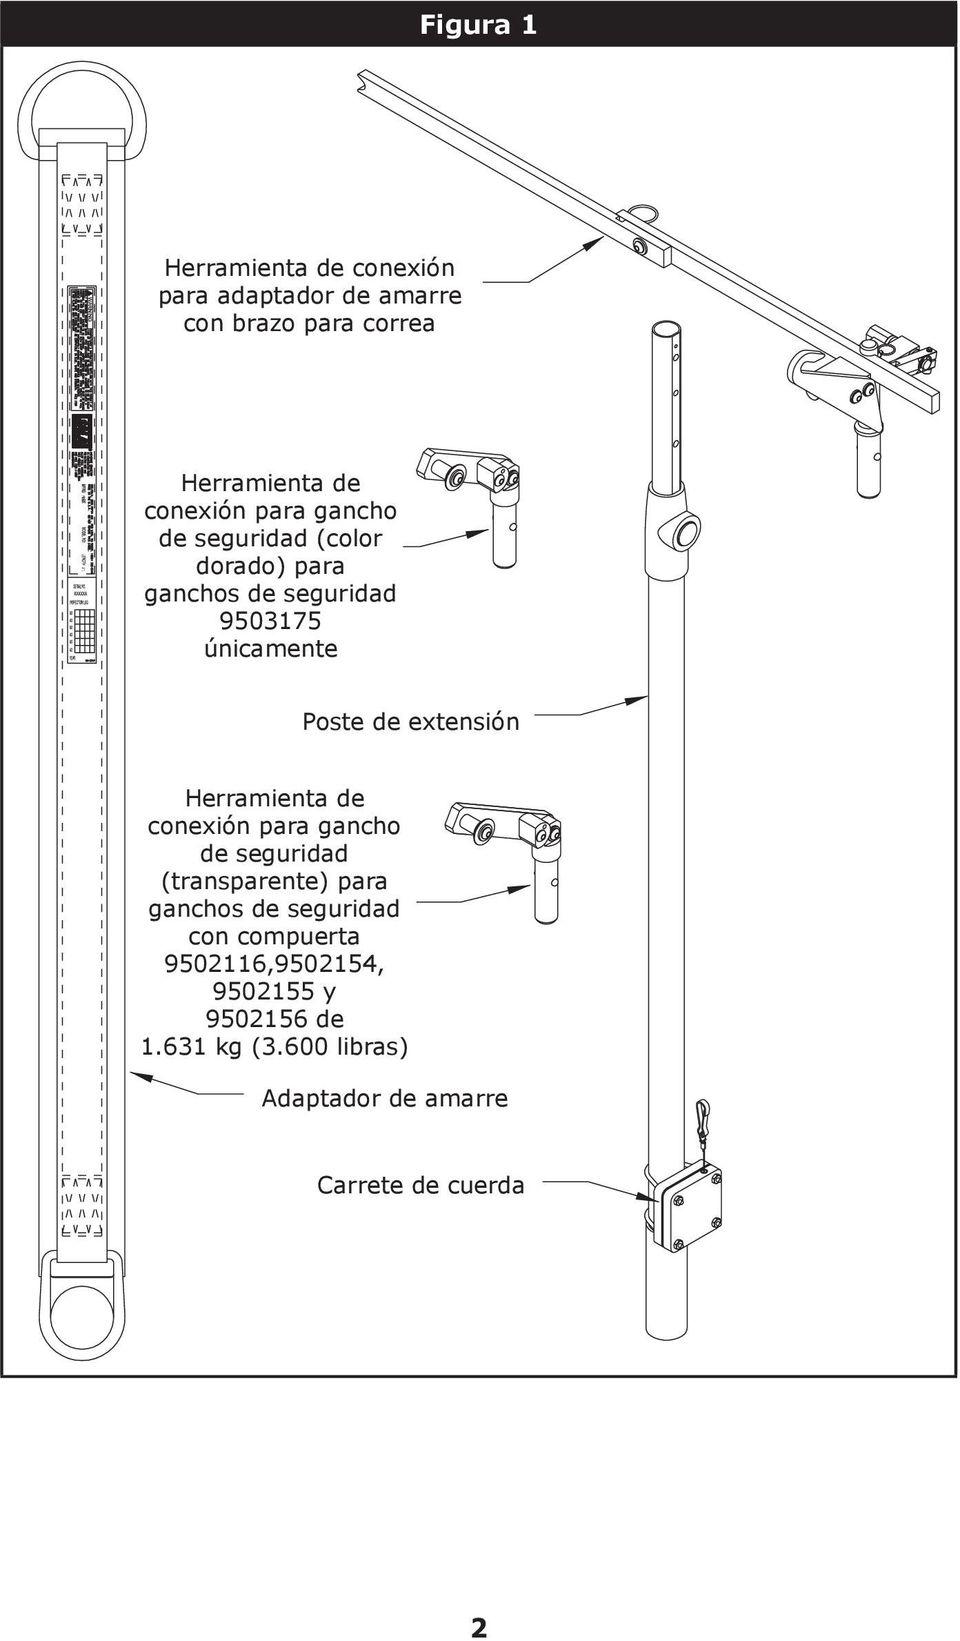 Herramienta de conexión para gancho de seguridad (transparente) para ganchos de seguridad con compuerta